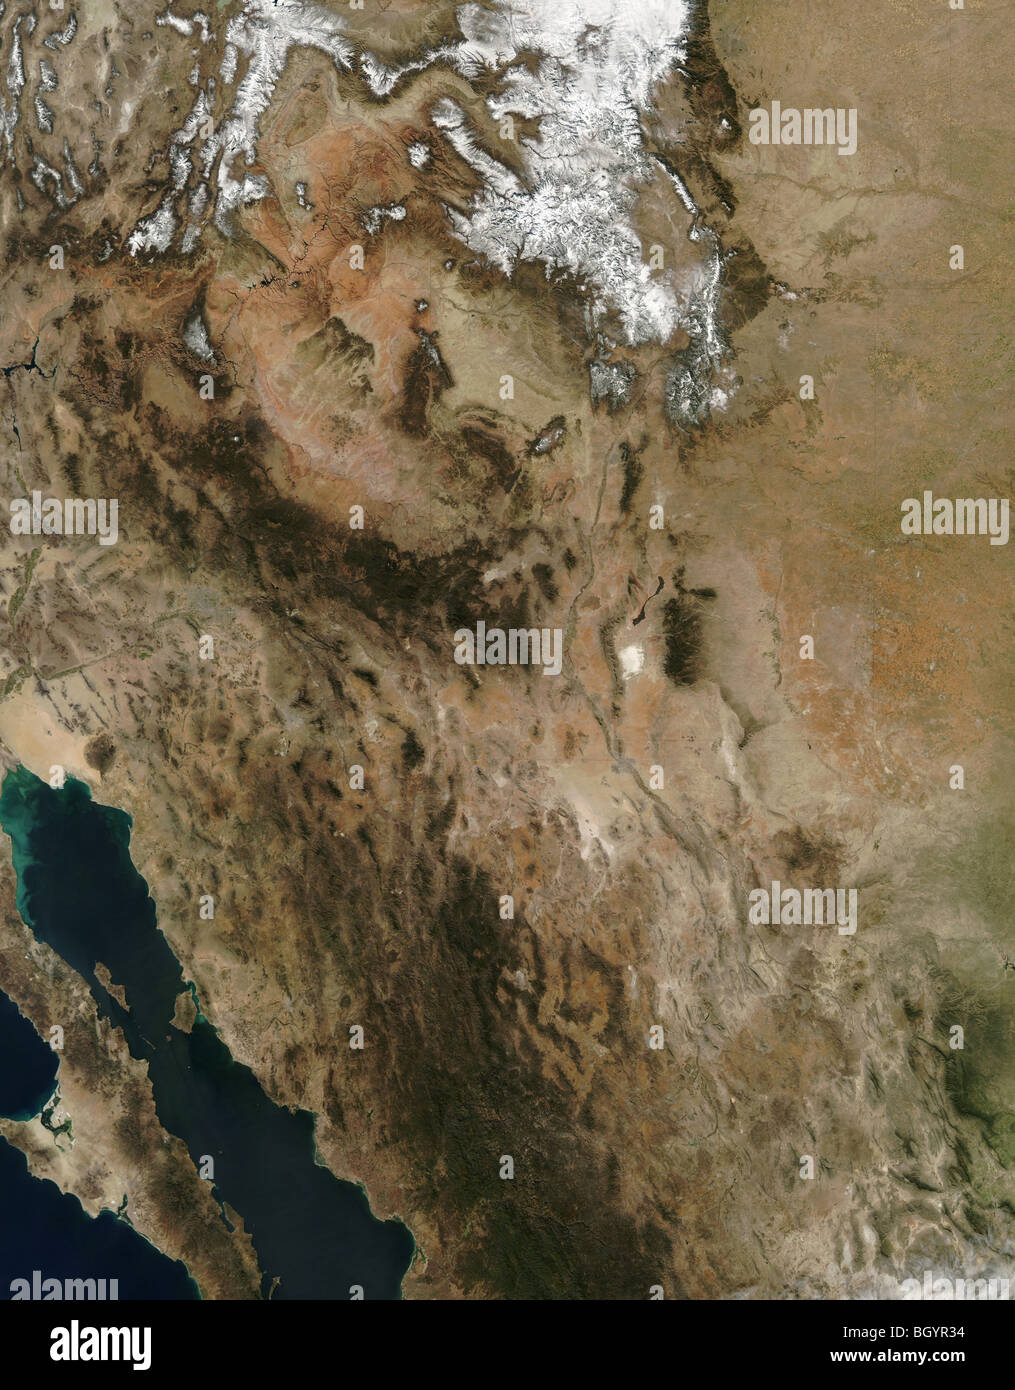 Südwesten der USA und Mexiko per Satellit gesehen. Kredit NASA Stockfoto